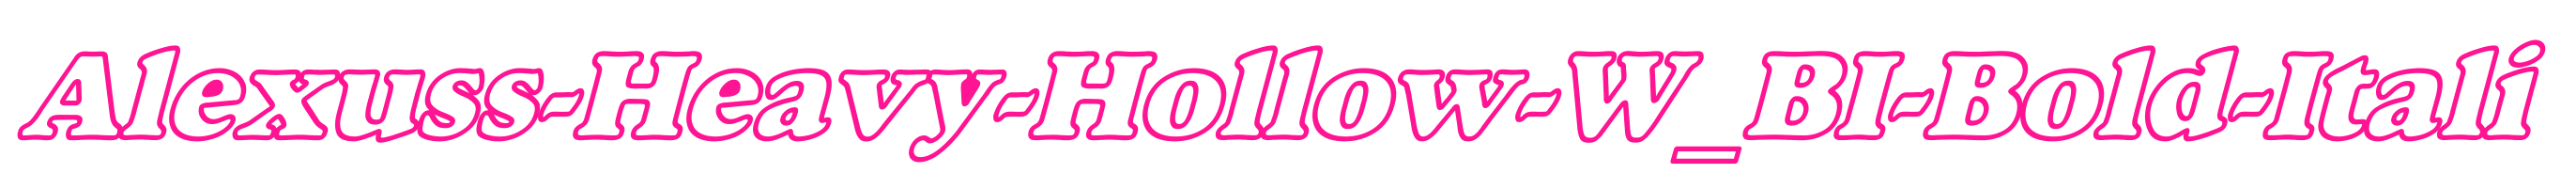 Alexuss-Heavy-Hollow-W_BI-Bold-I预览图片